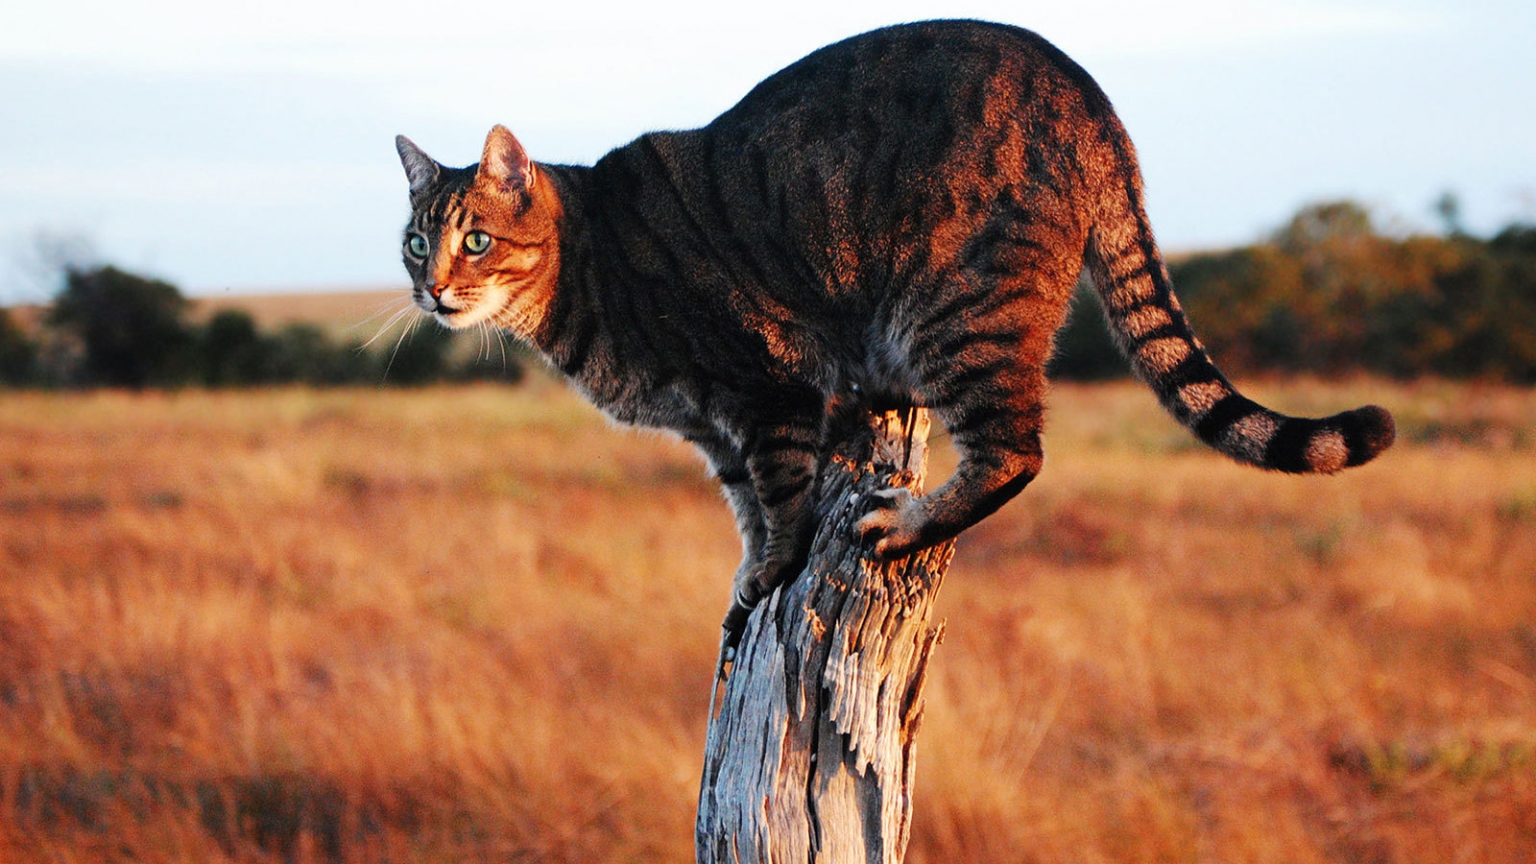 Savannah Cat on Stump for 1536 x 864 HDTV resolution